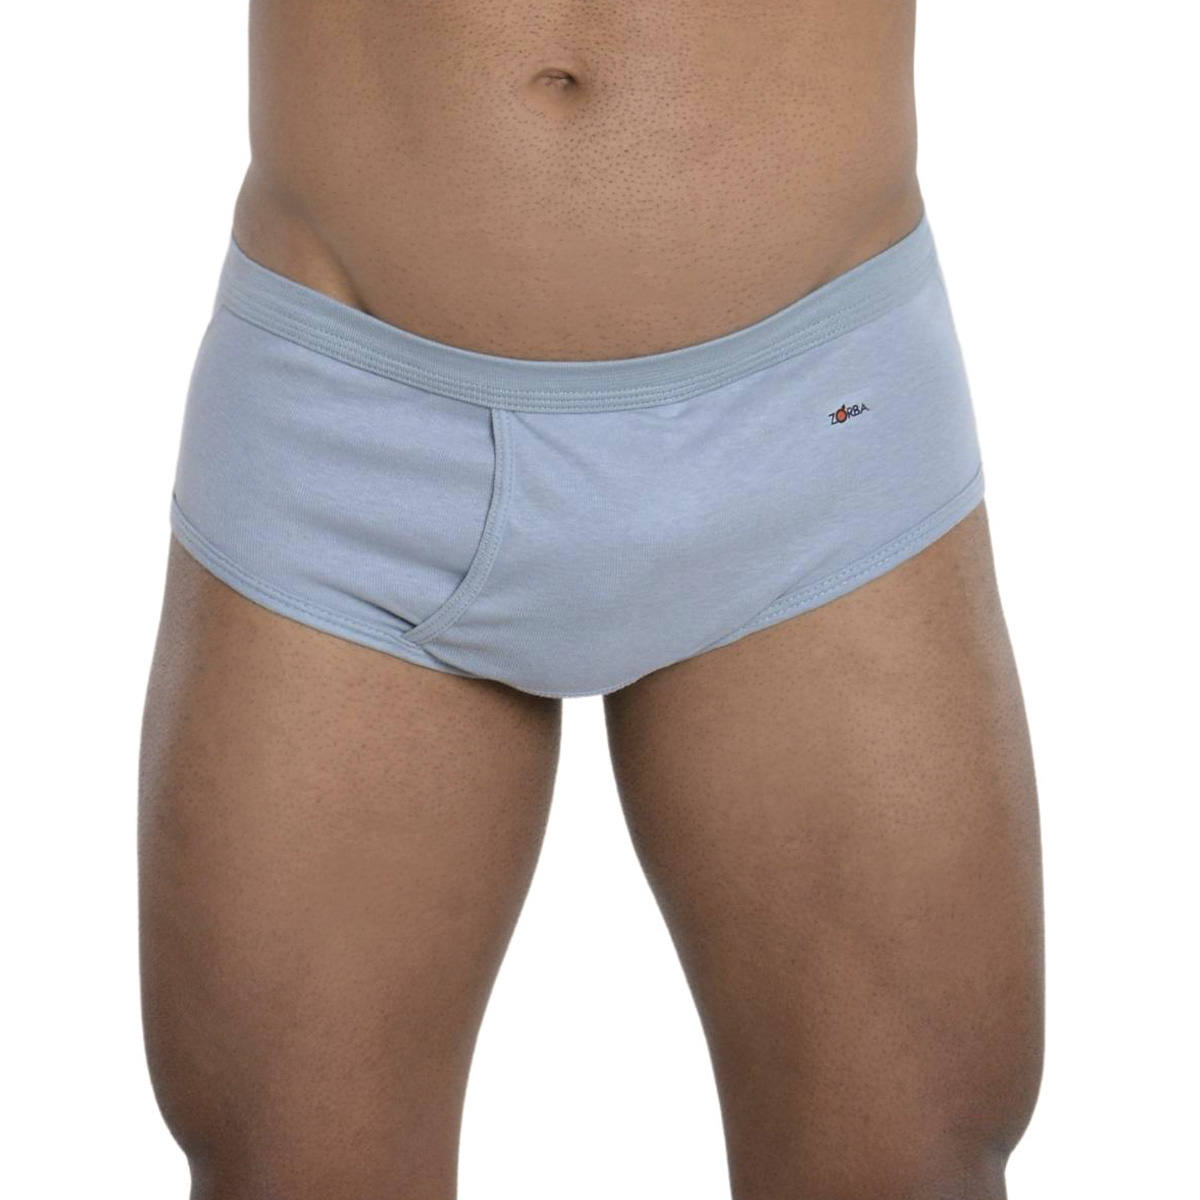 Cueca masculina em algodão modelo slip Linea com abertura Zorba